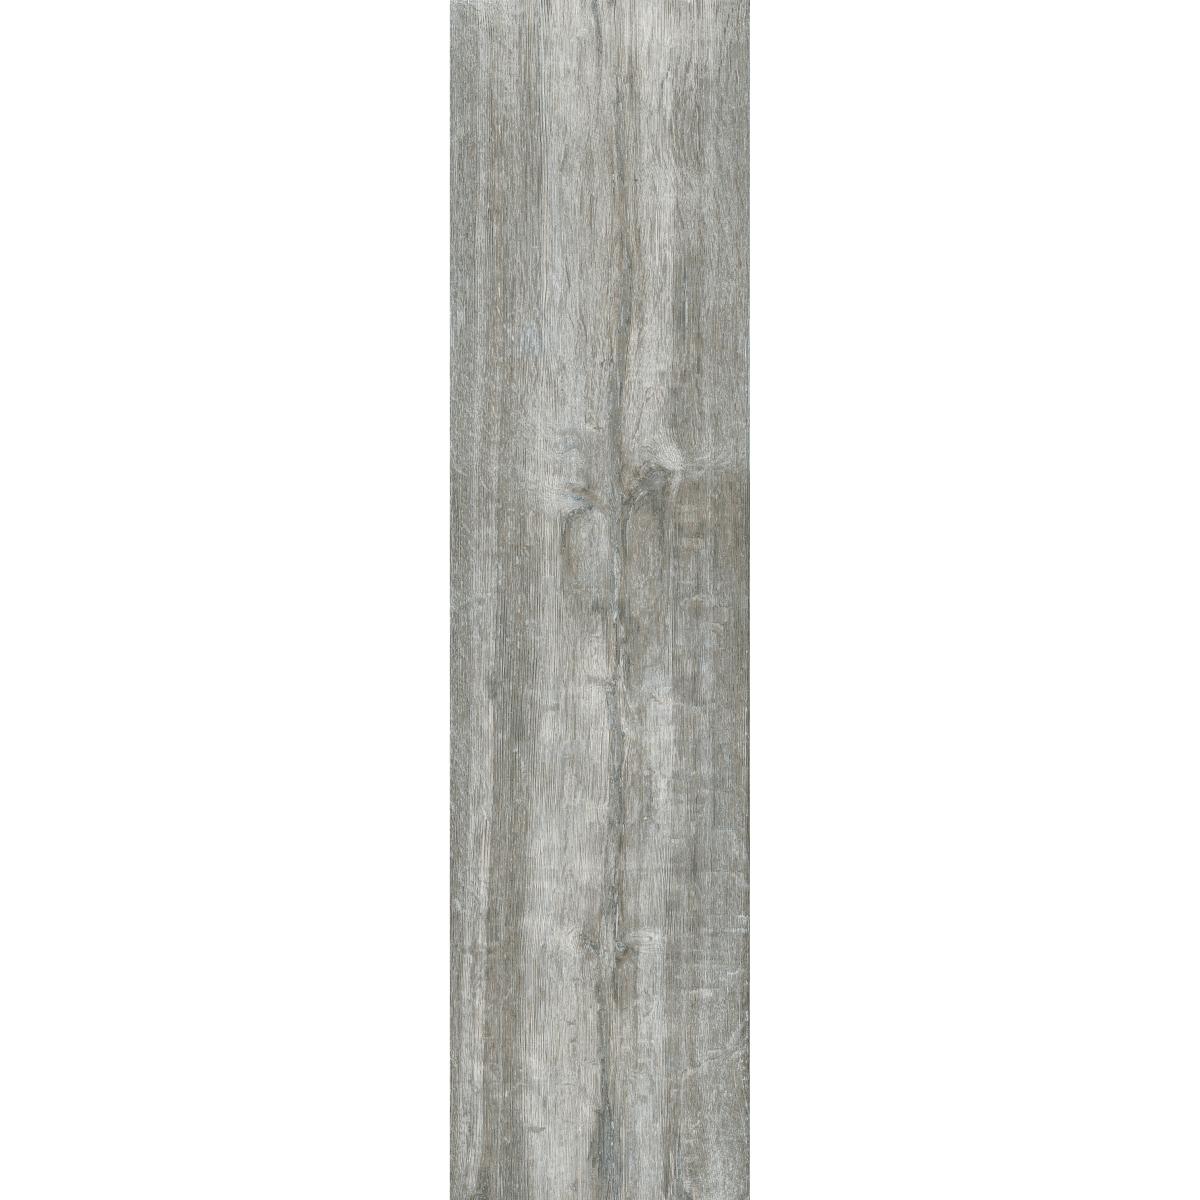 Woodland Grey Wood Effect Porcelain Tile 15x58cm